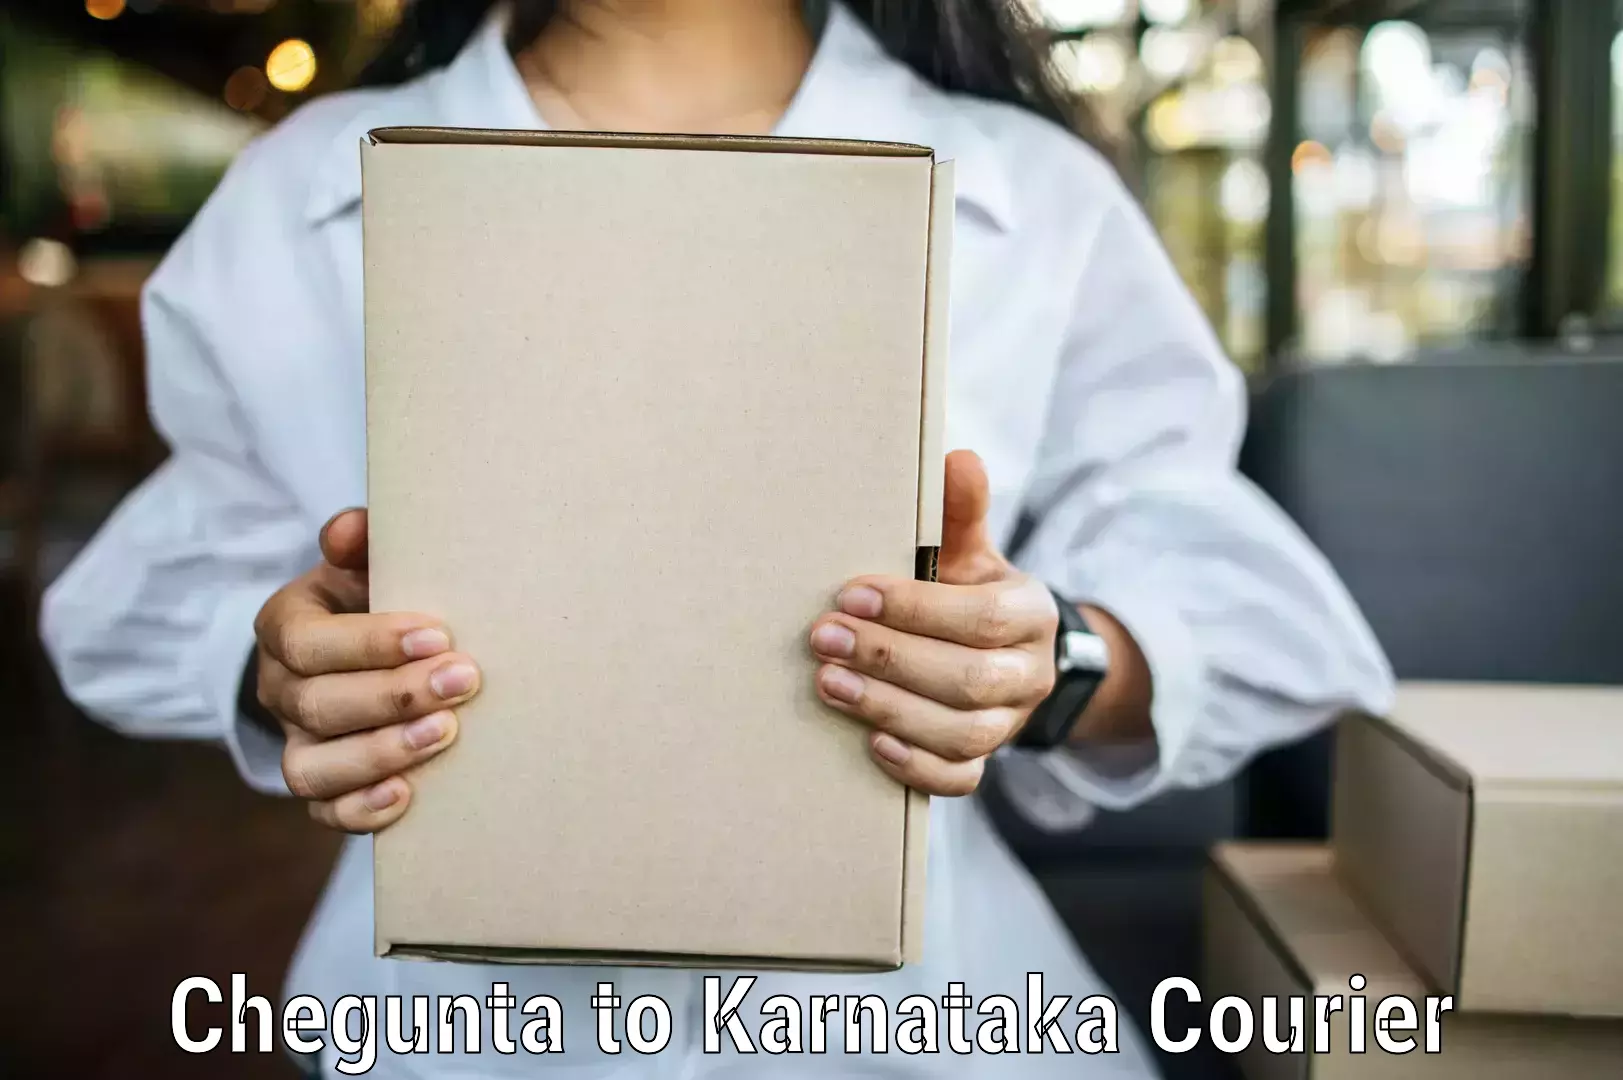 Premium courier solutions Chegunta to Ukkadagatri